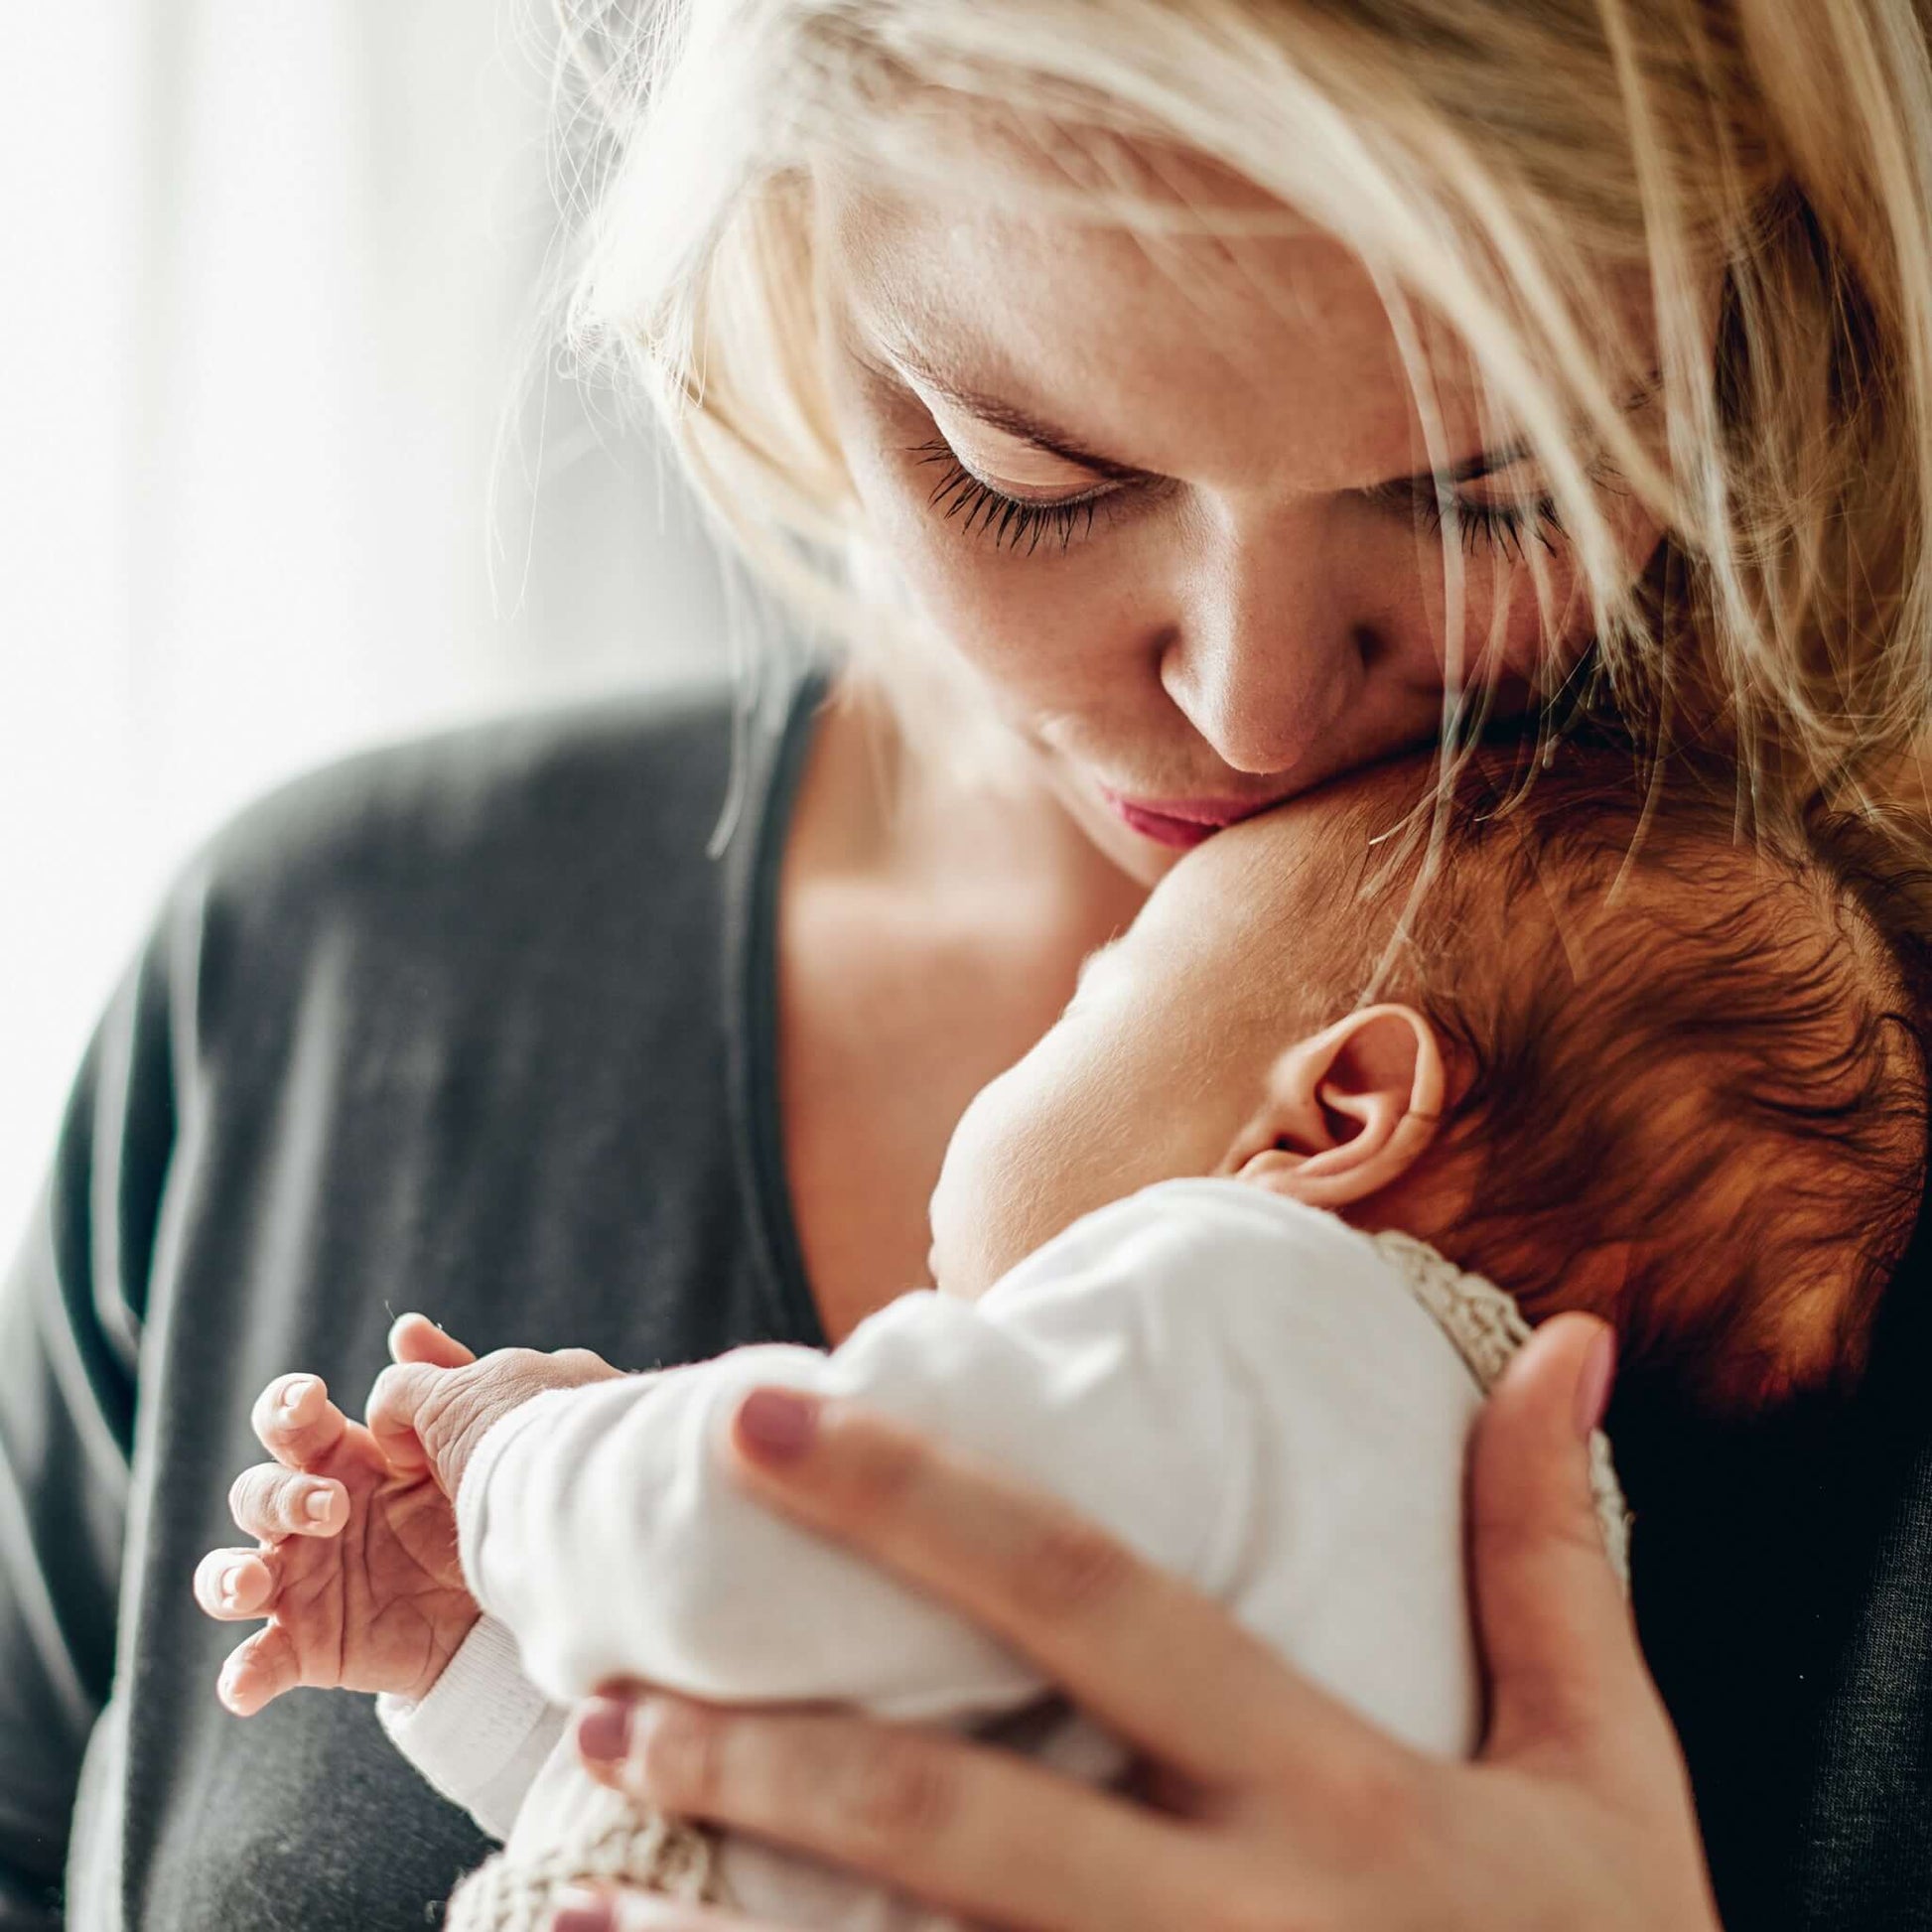 Geburtsurkunde übersetzen lassen: Eine Mutter gibt ihrem Baby einen Kuss auf die Stirn